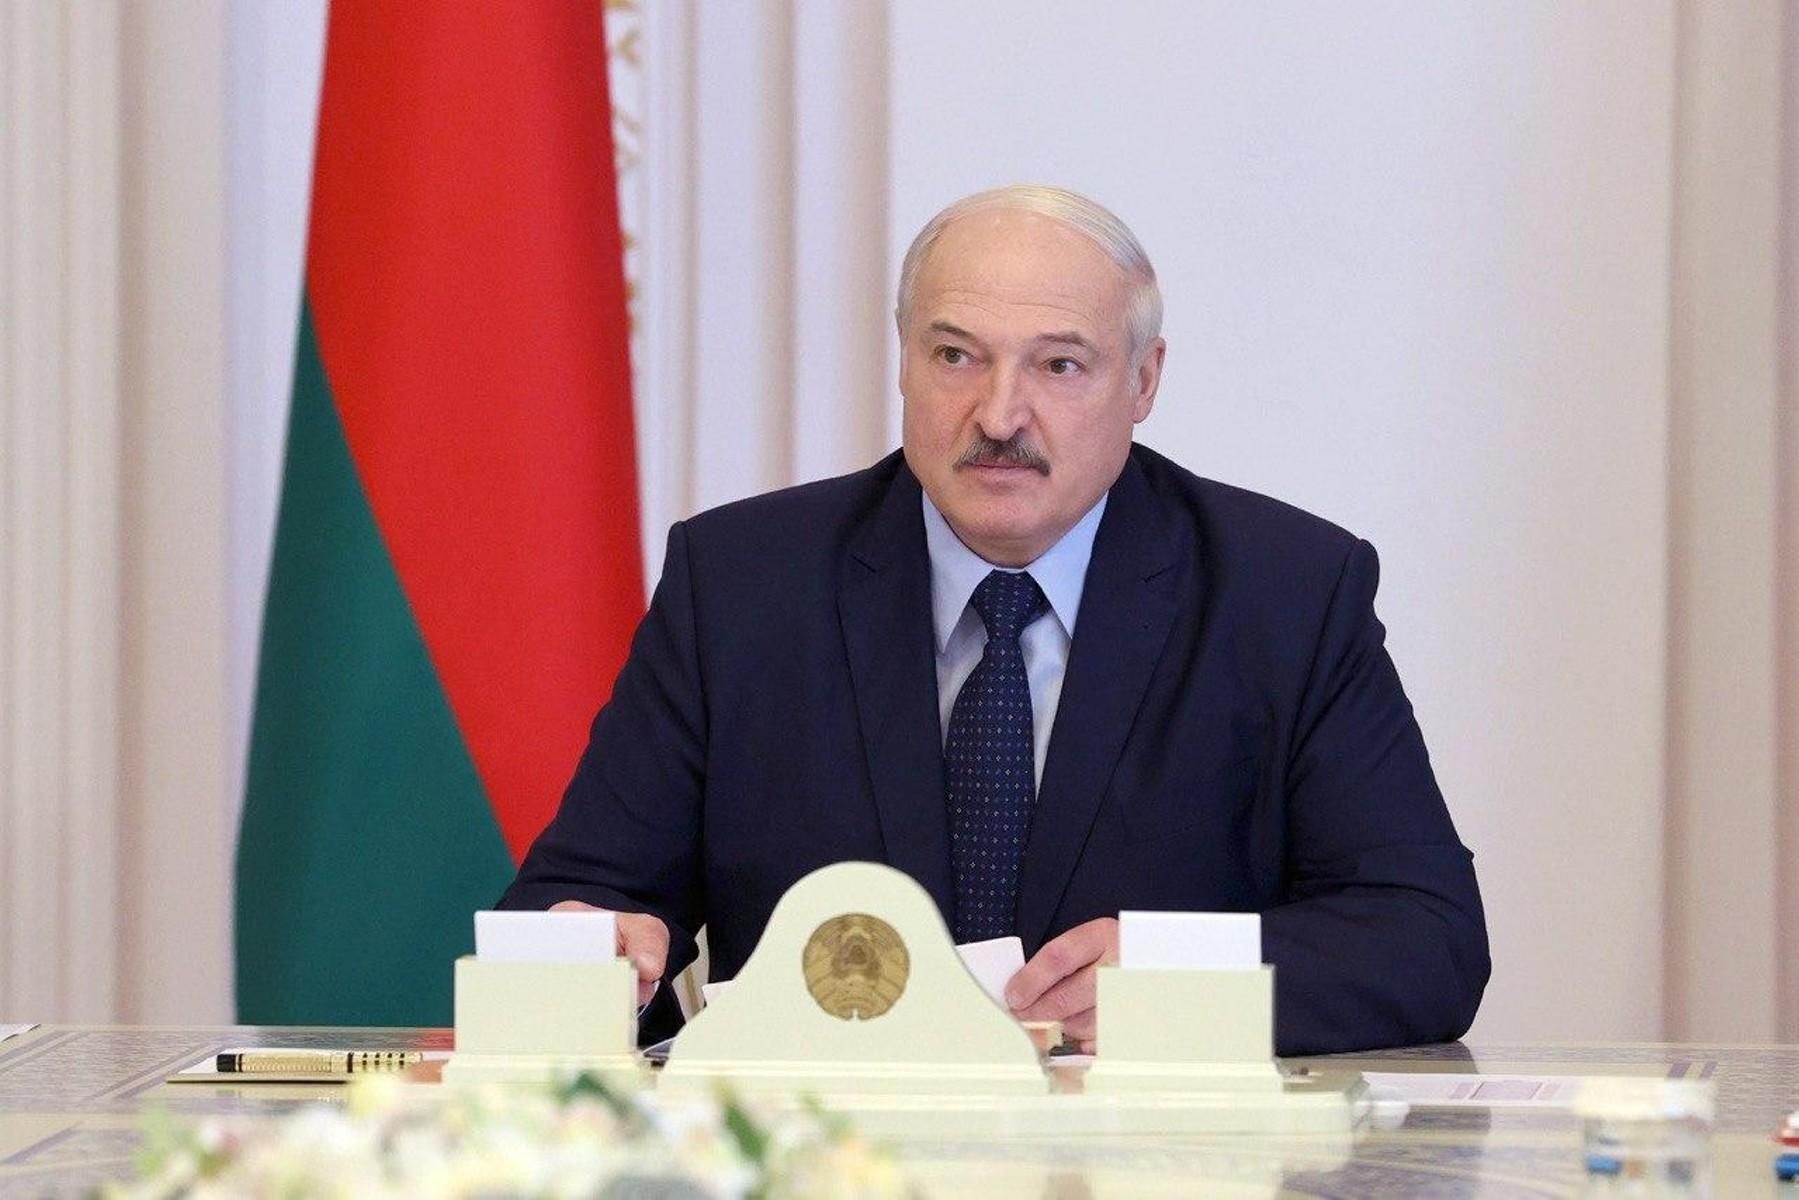 Если человек упал, то его не надо бить, – Лукашенко снова встал на защиту омоновцев